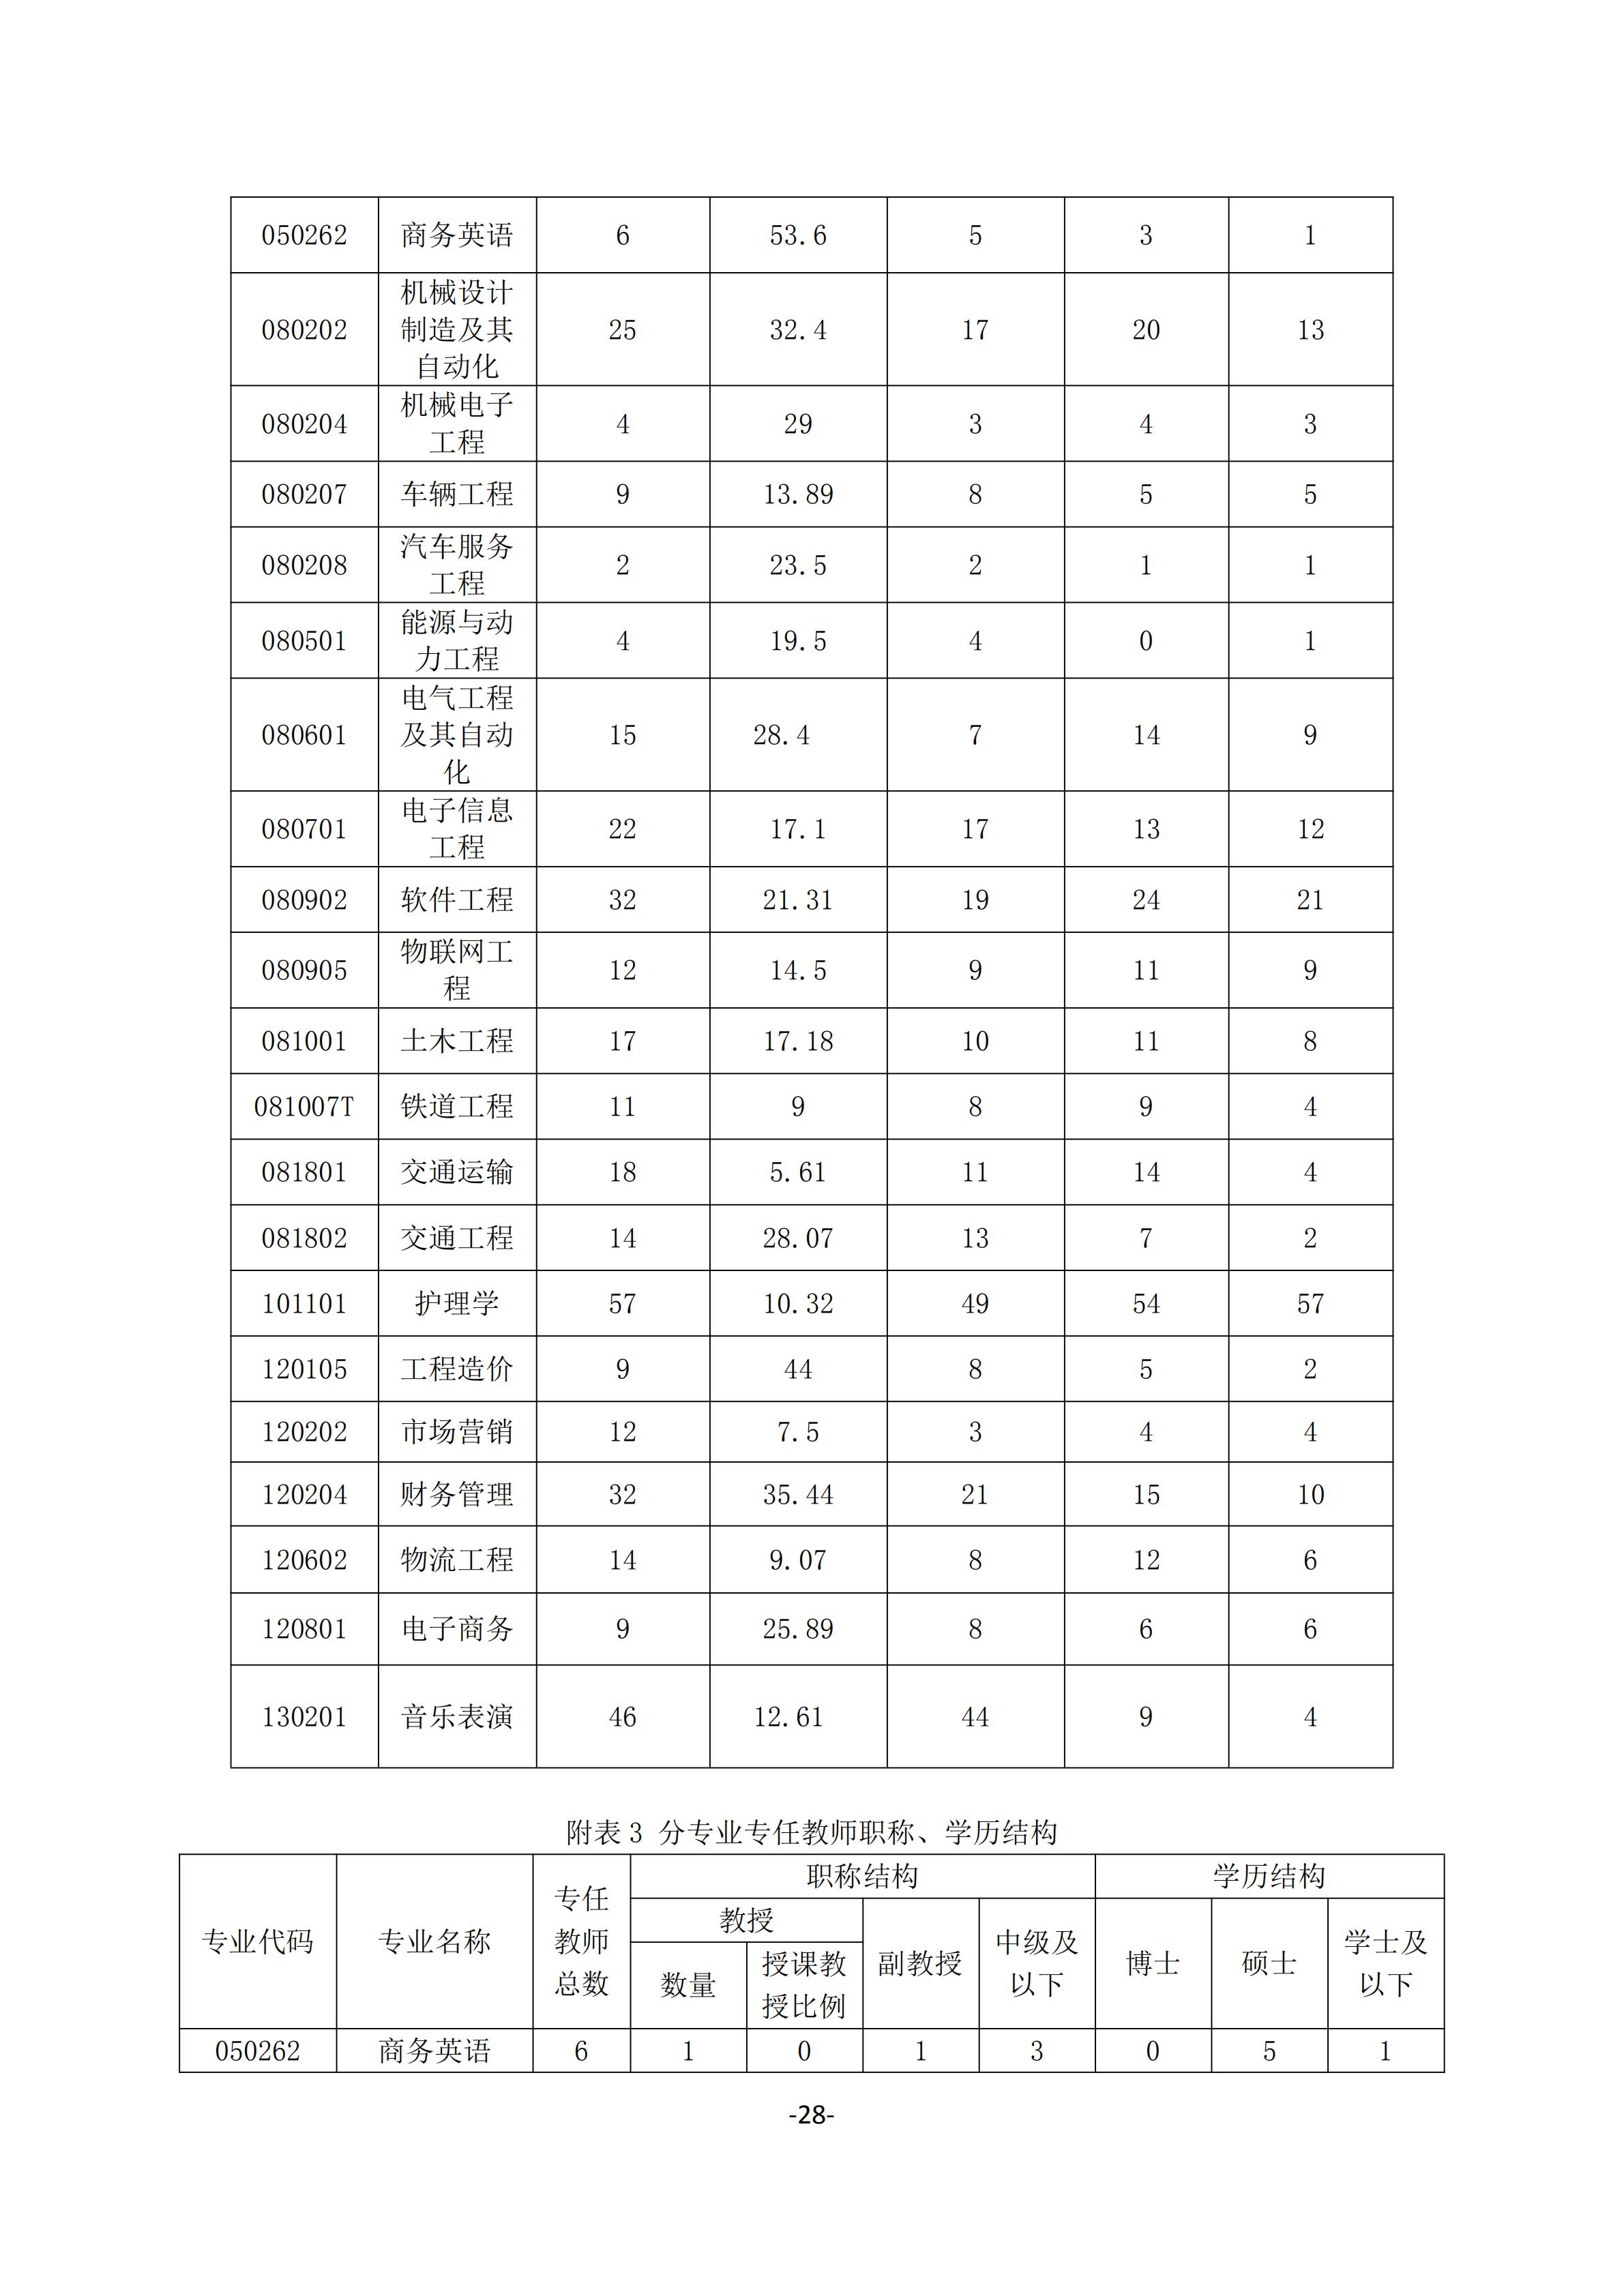 1.湖南交通工程学院2018-2019学年本科教学质量报告_27.jpg